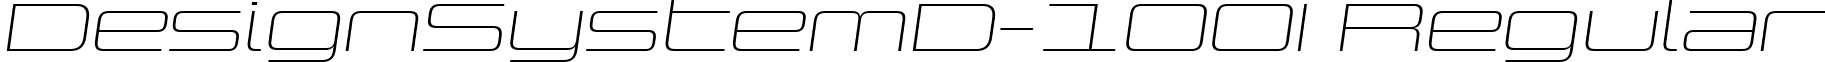 DesignSystemD-100I Regular font - Design System D 100 Italic.ttf